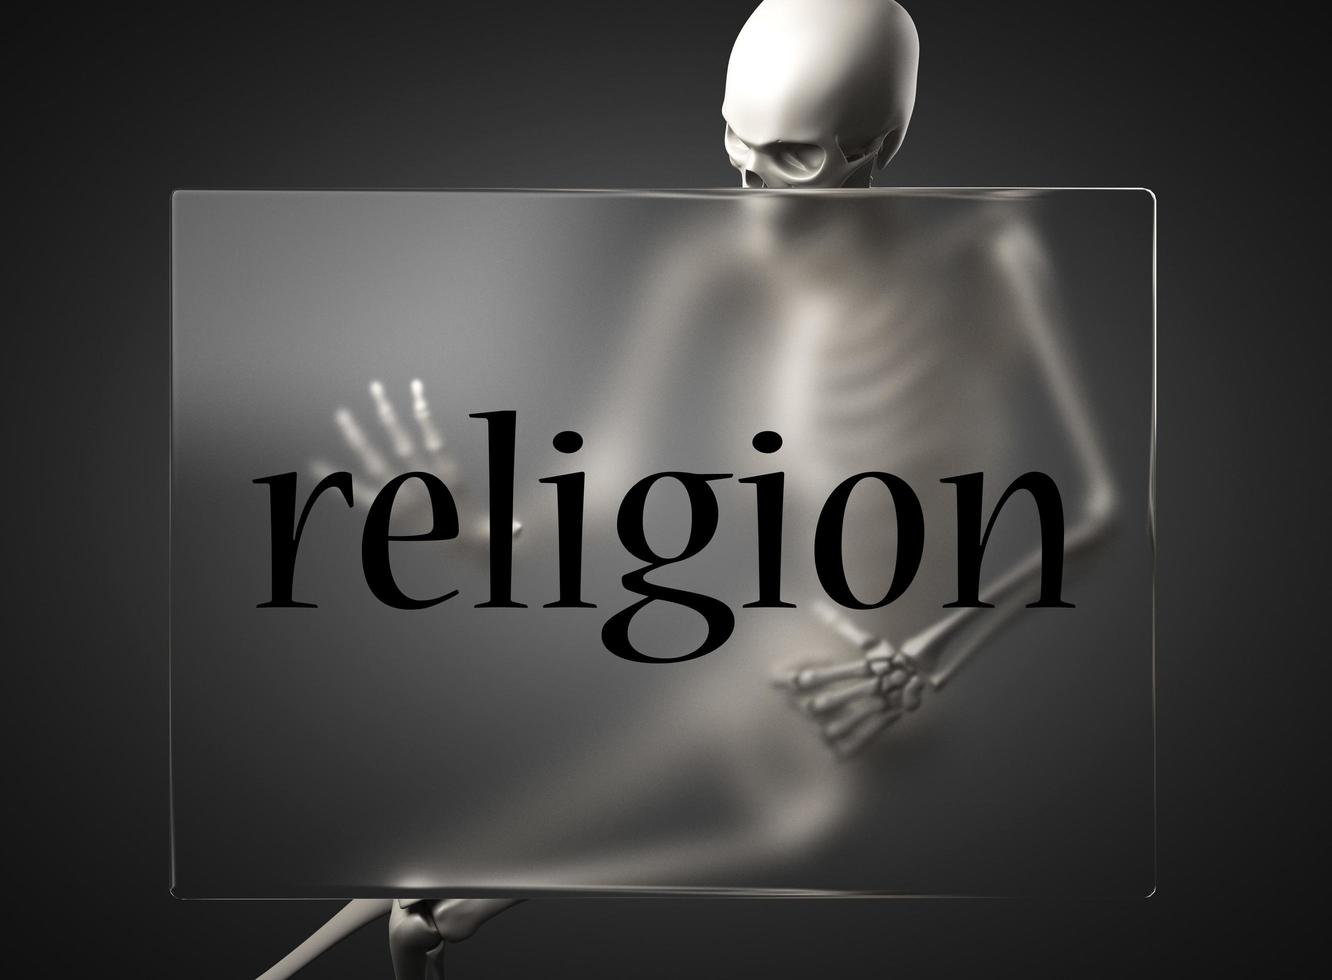 religionsord på glas och skelett foto